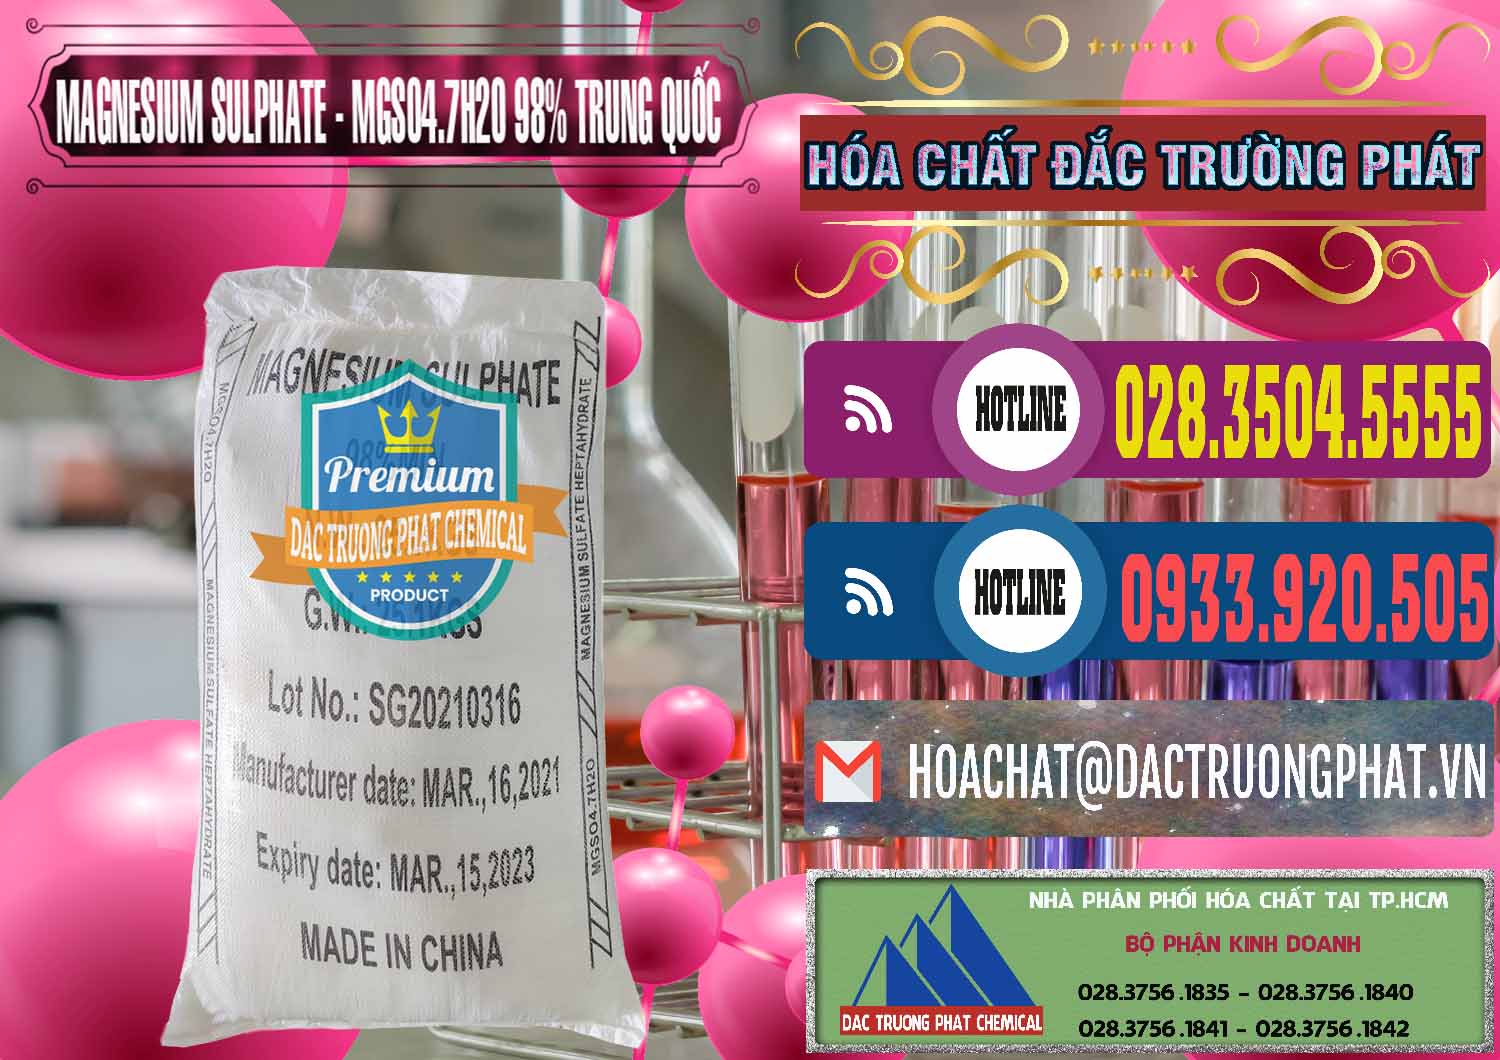 Nơi chuyên cung cấp _ bán MGSO4.7H2O – Magnesium Sulphate 98% Trung Quốc China - 0229 - Công ty chuyên cung cấp _ kinh doanh hóa chất tại TP.HCM - muabanhoachat.com.vn